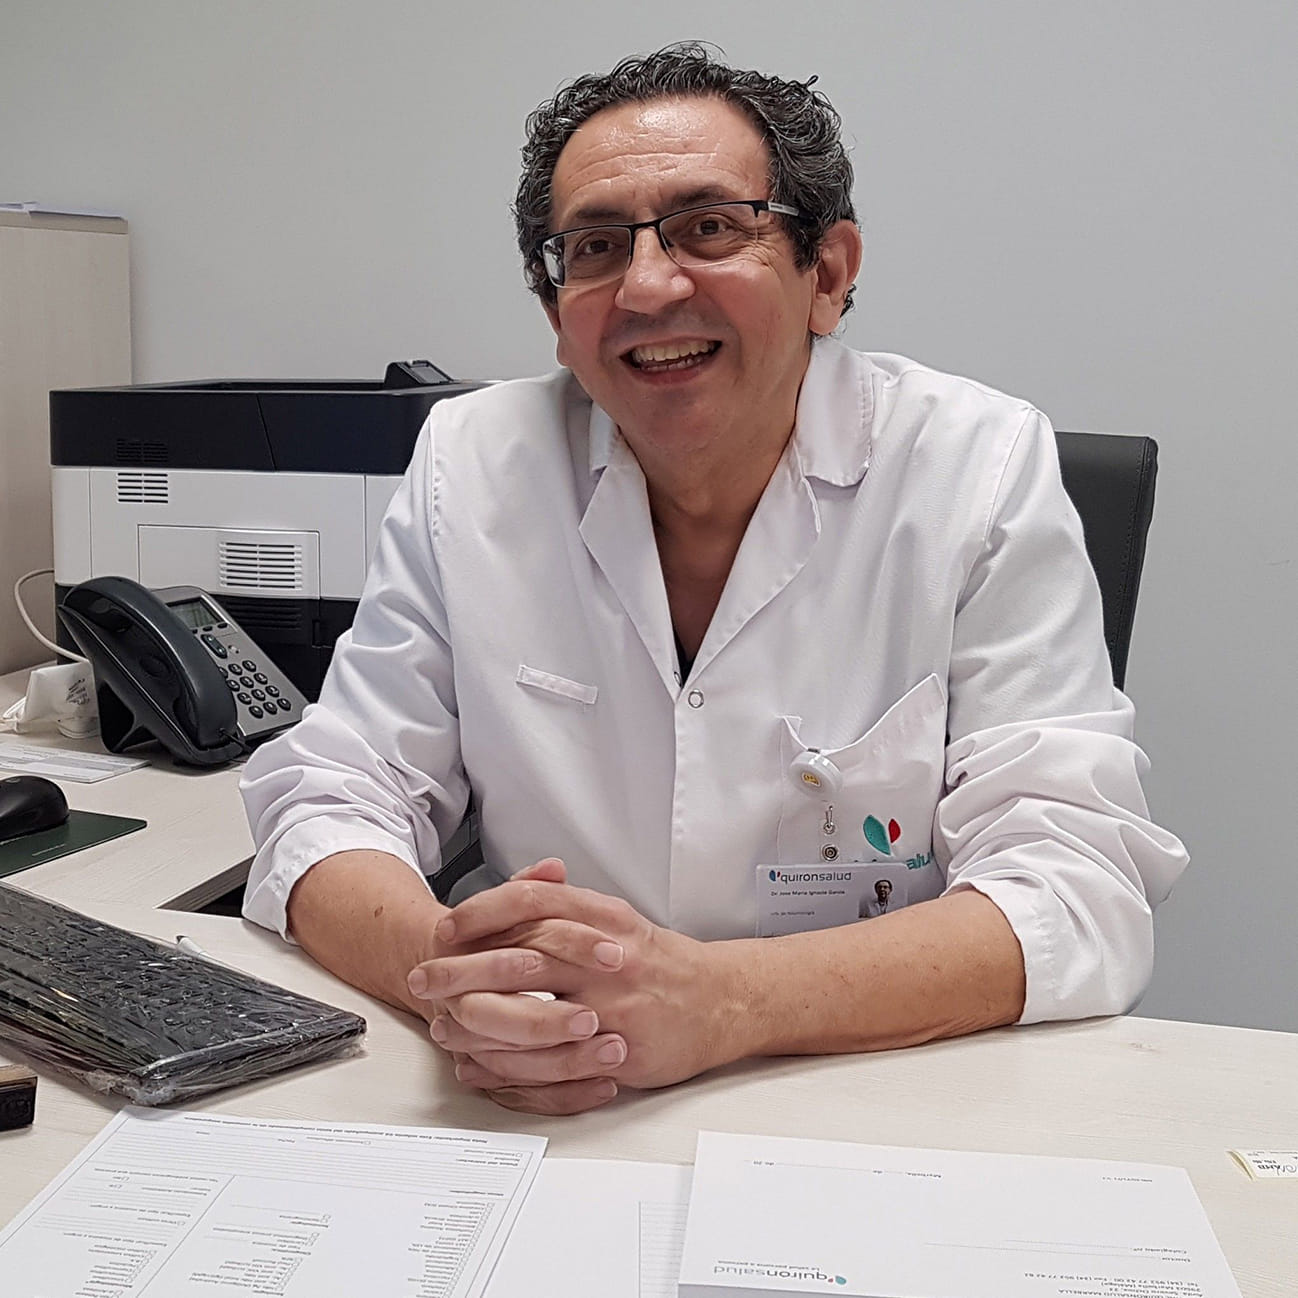 Parlem amb el Dr. José María Ignacio, cap del Servei de Pneumologia de l'Hospital Quirónsalud Marbella